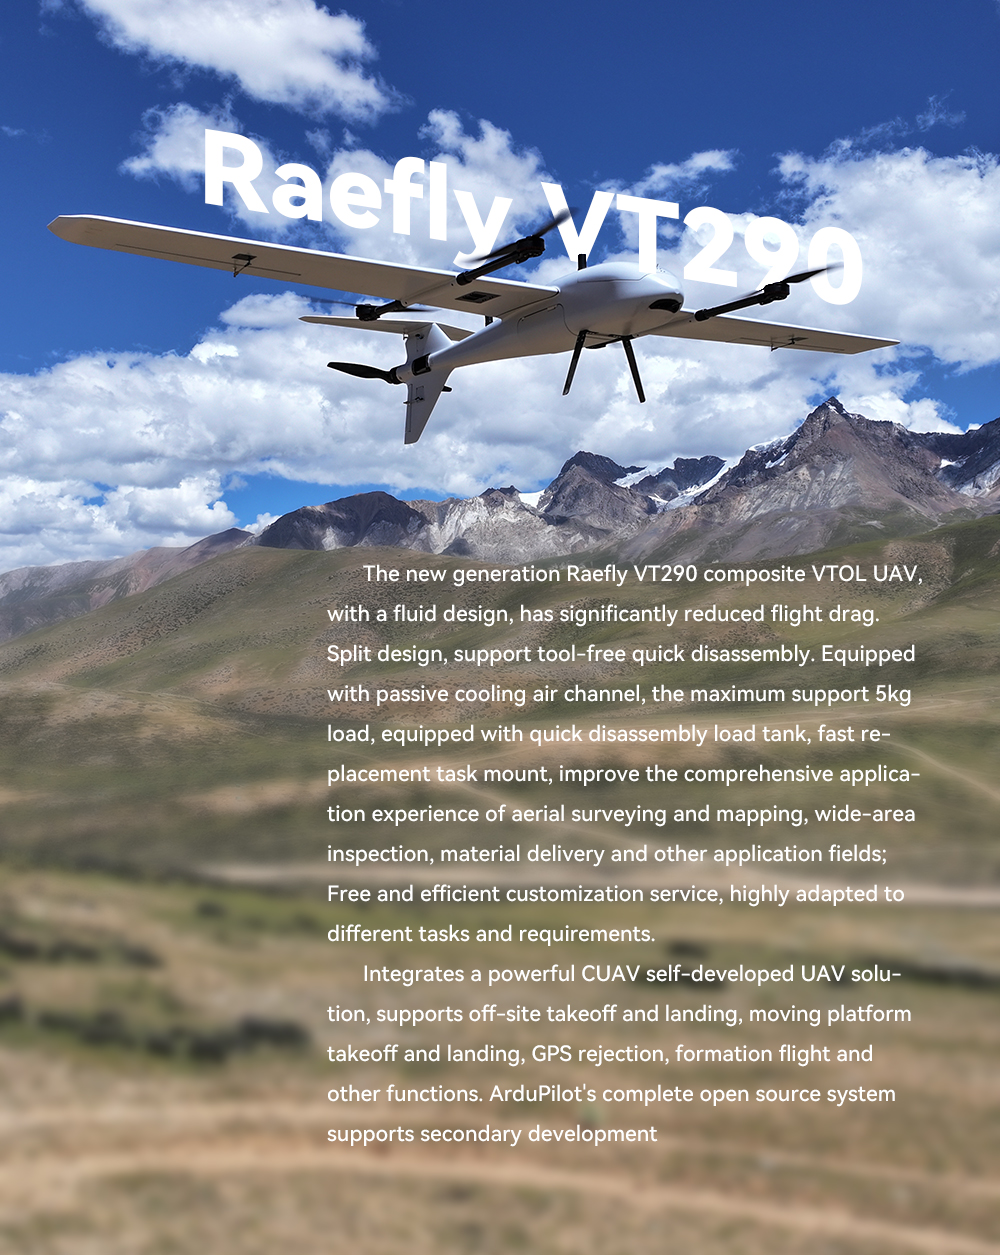 CUAV Raefly VT290 VTOL, Raefly VT290 composite VTOL UAV with a fluid design,